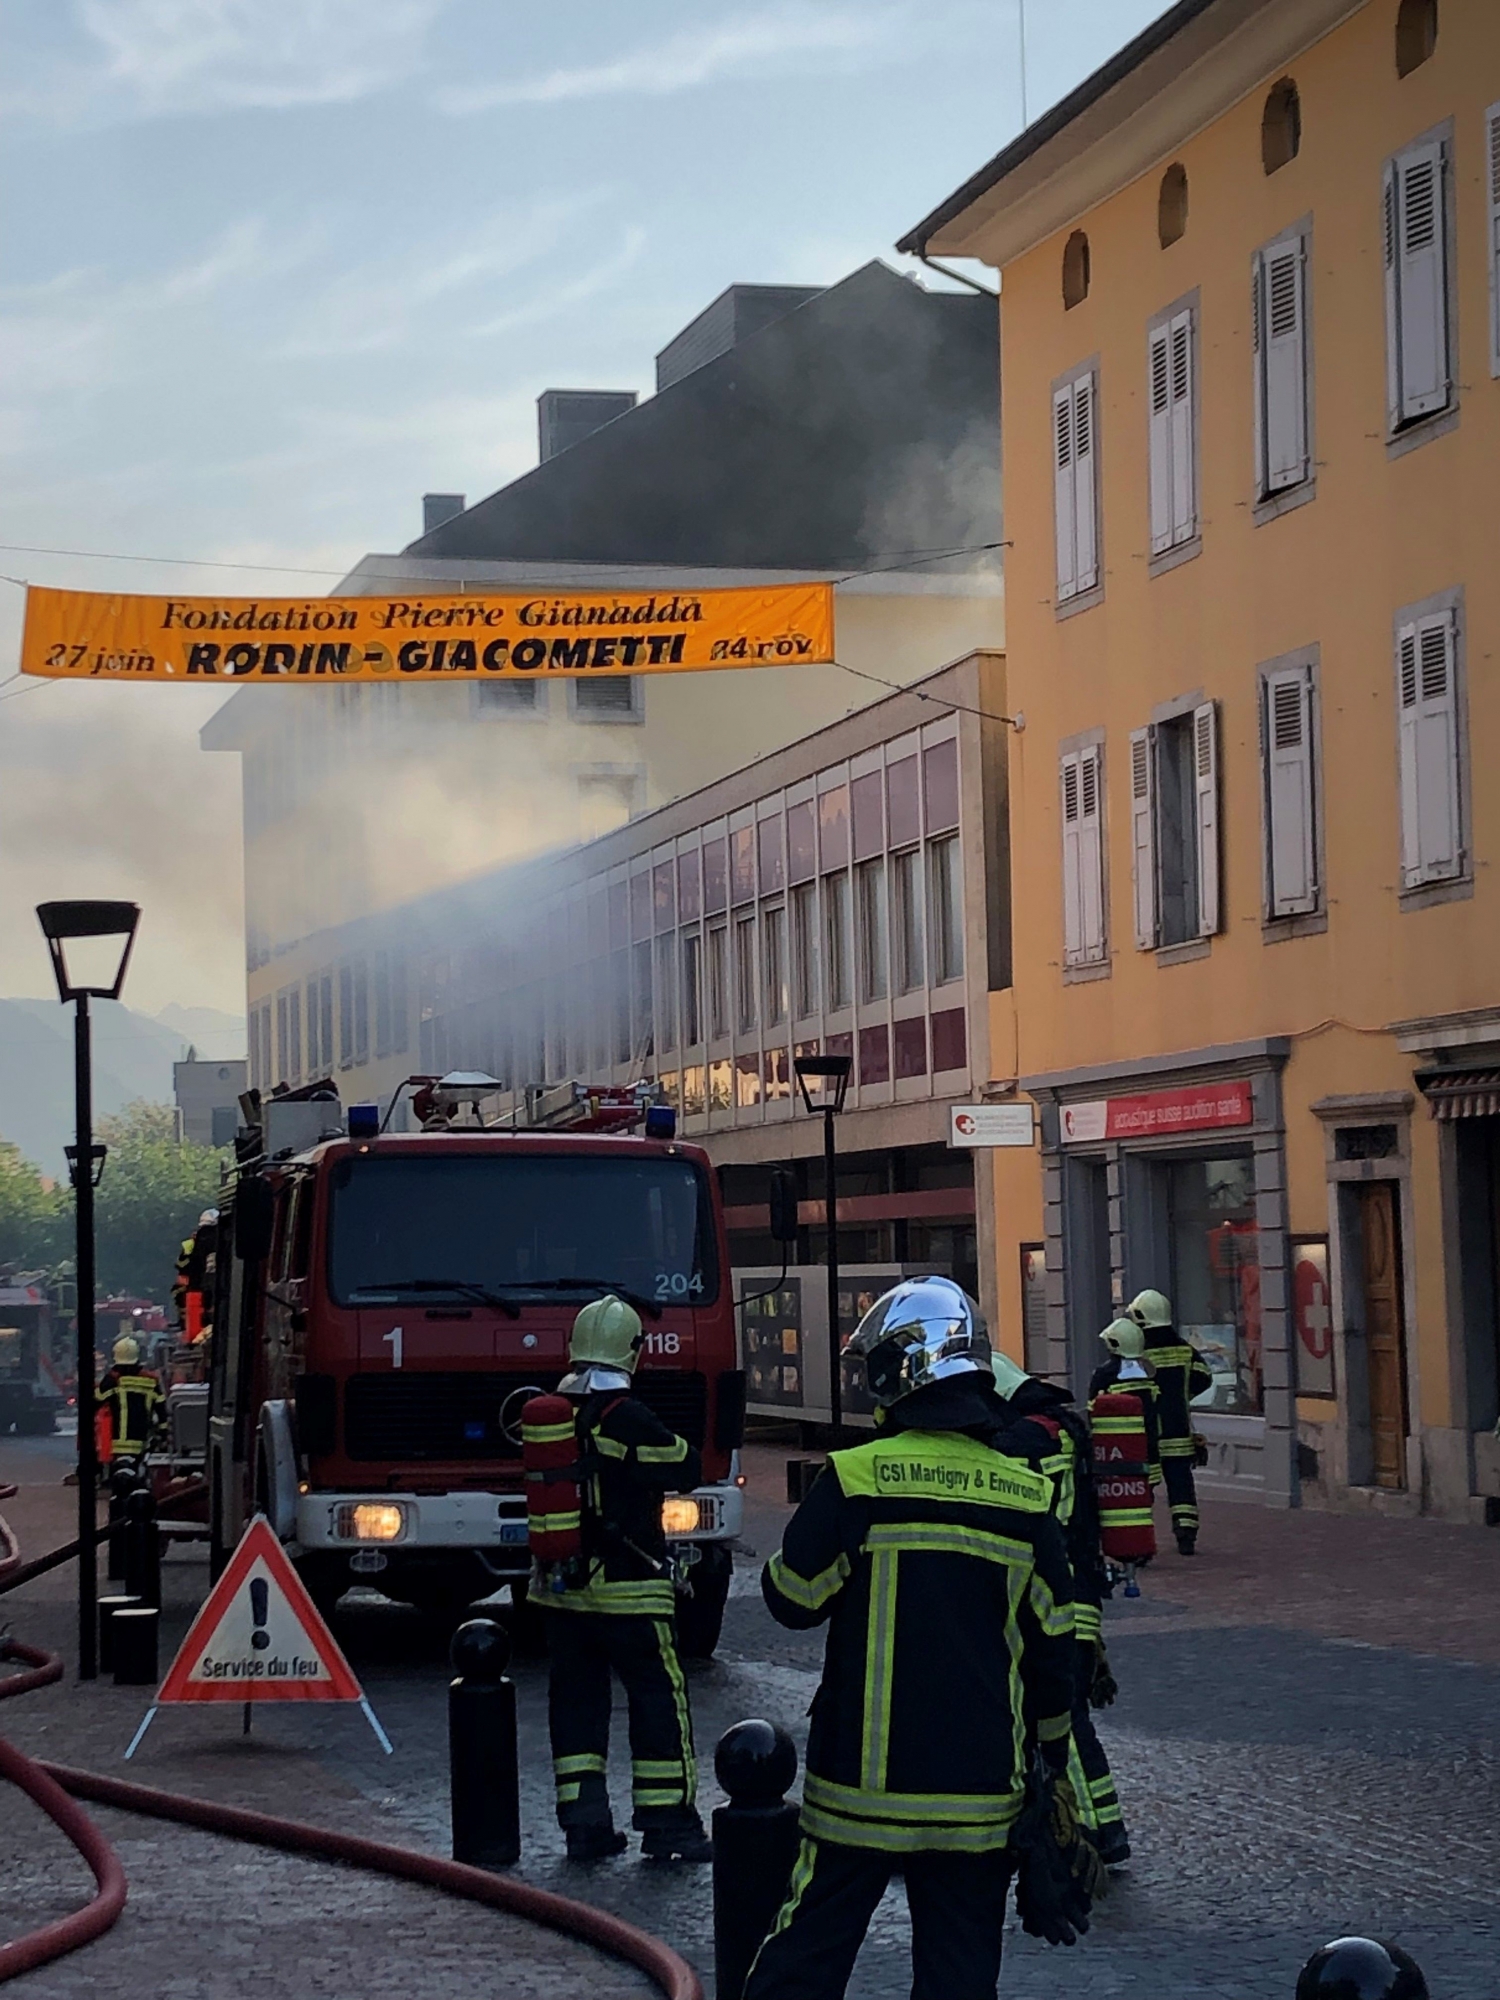 77 pompiers sont intervenus dans cet exercice près de la place centrale de Martigny.